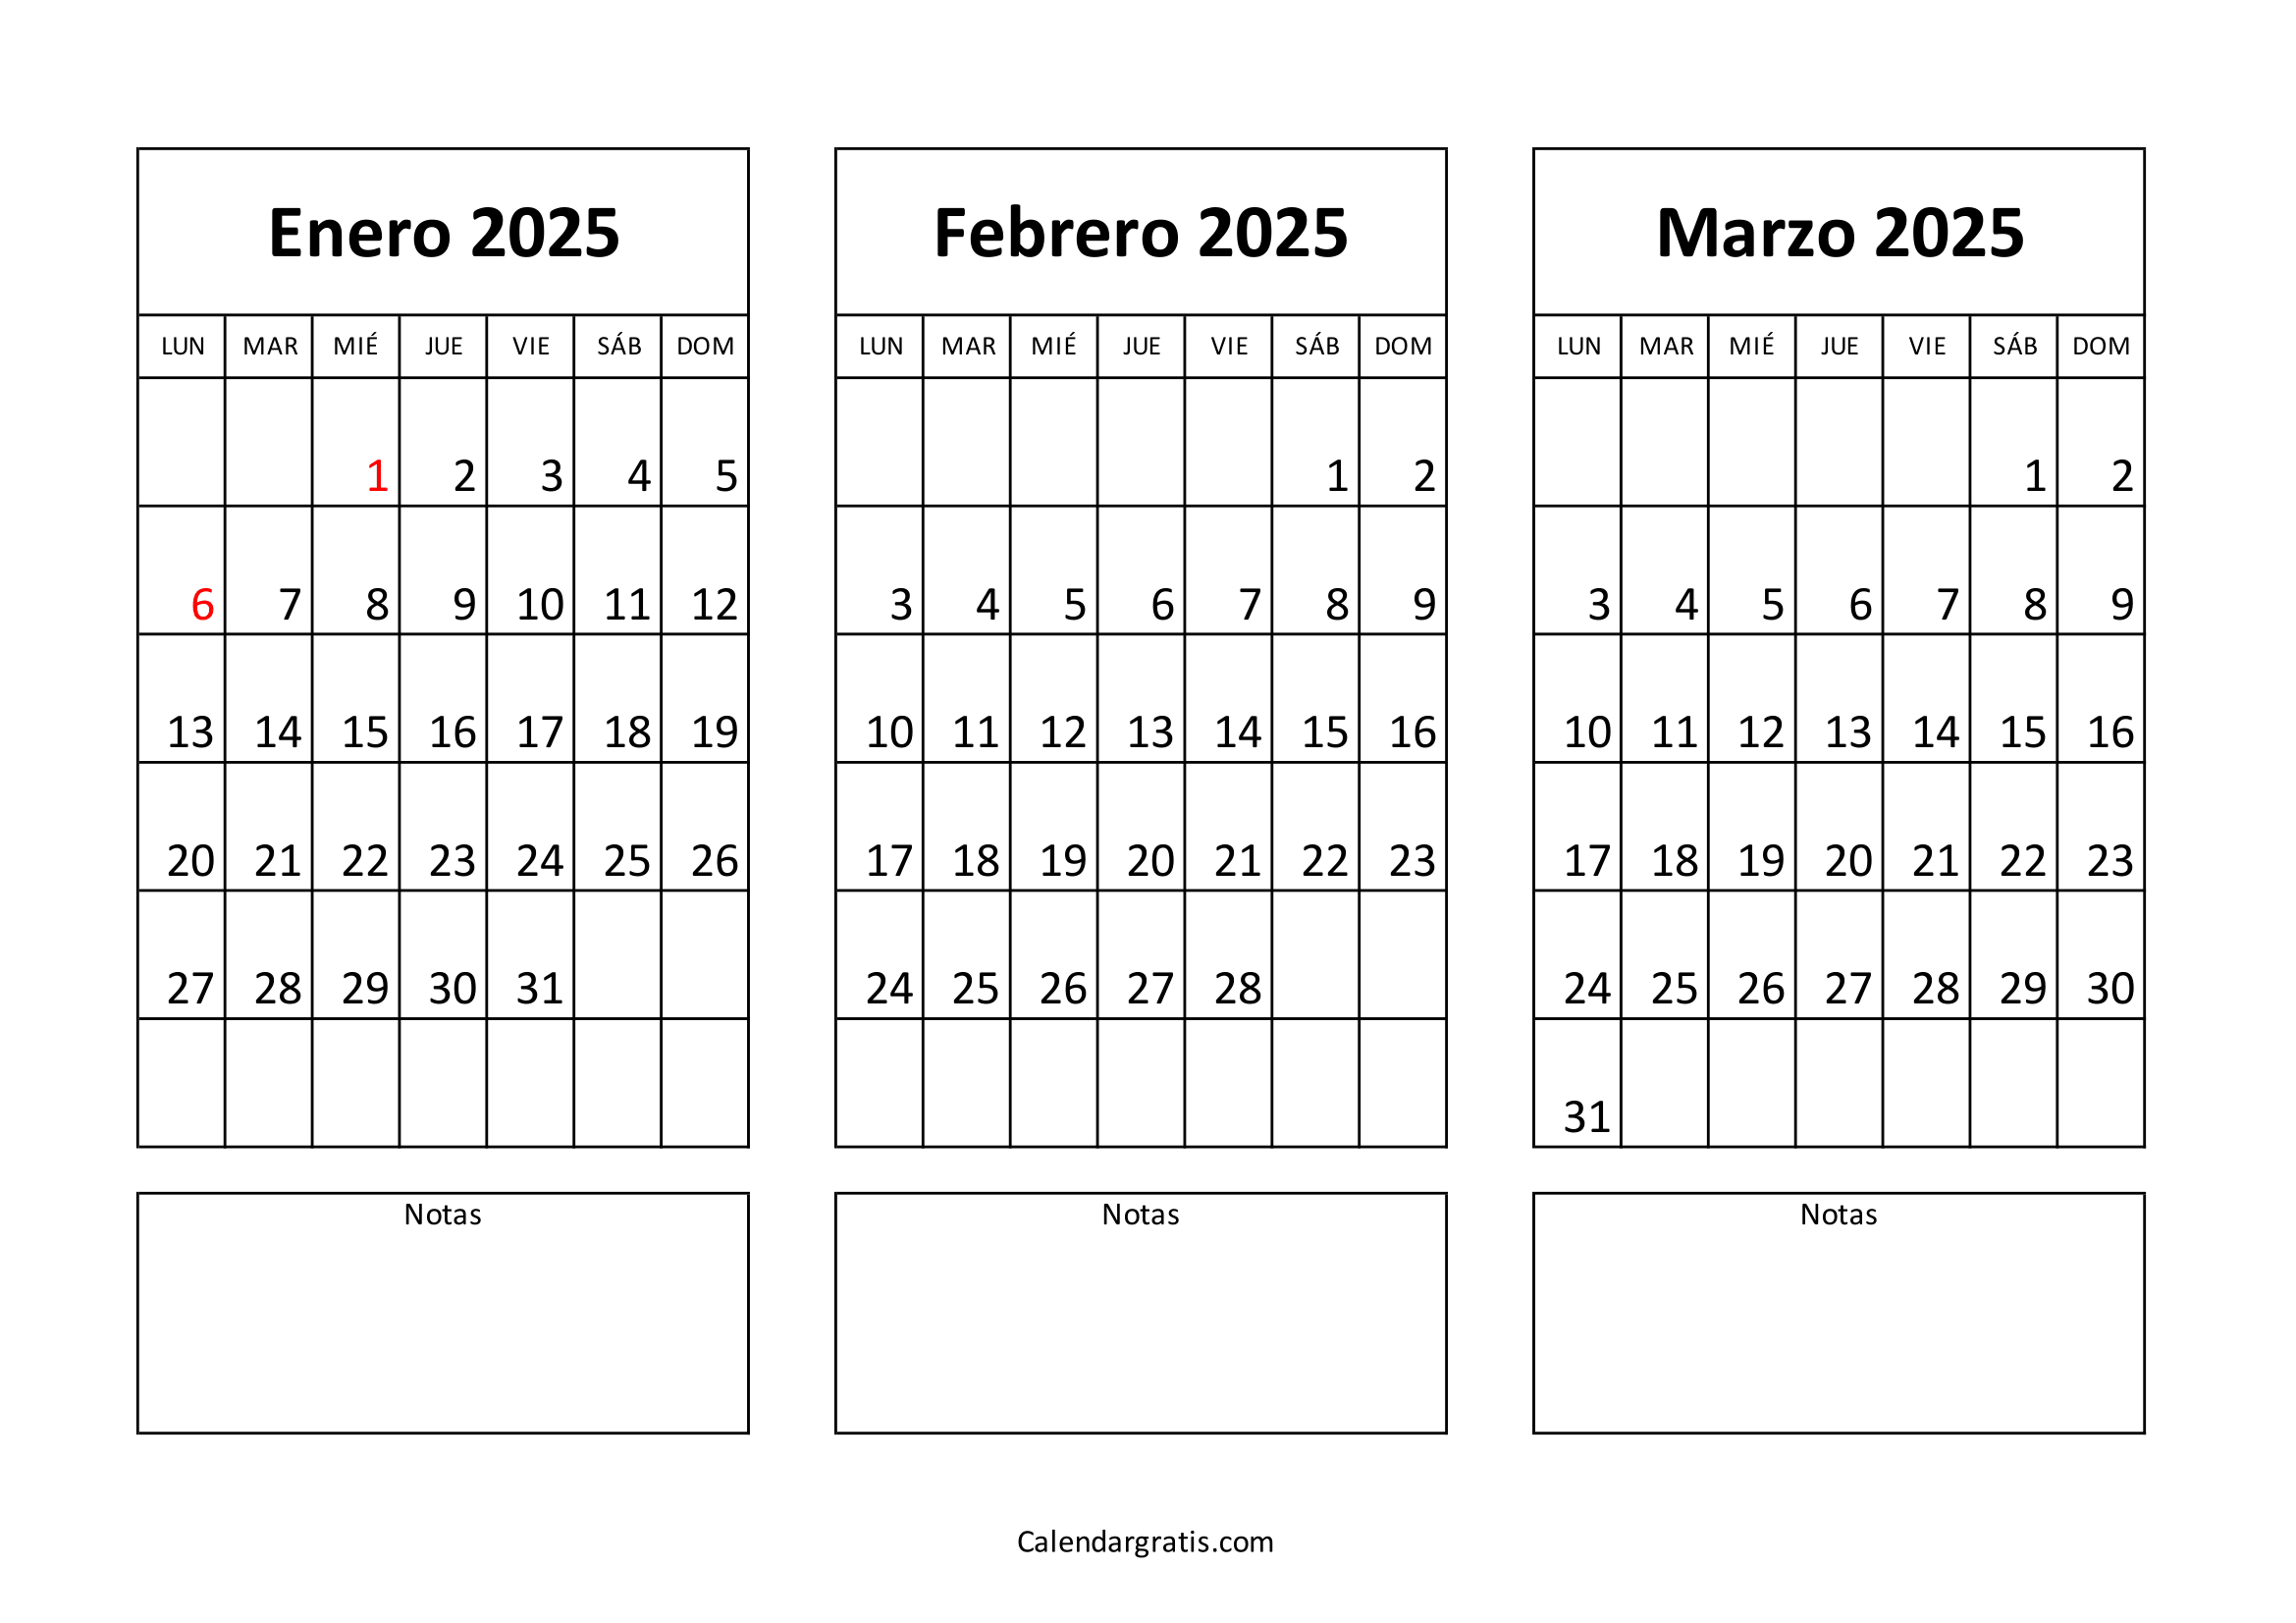 Calendario de enero febrero y marzo 2025 España